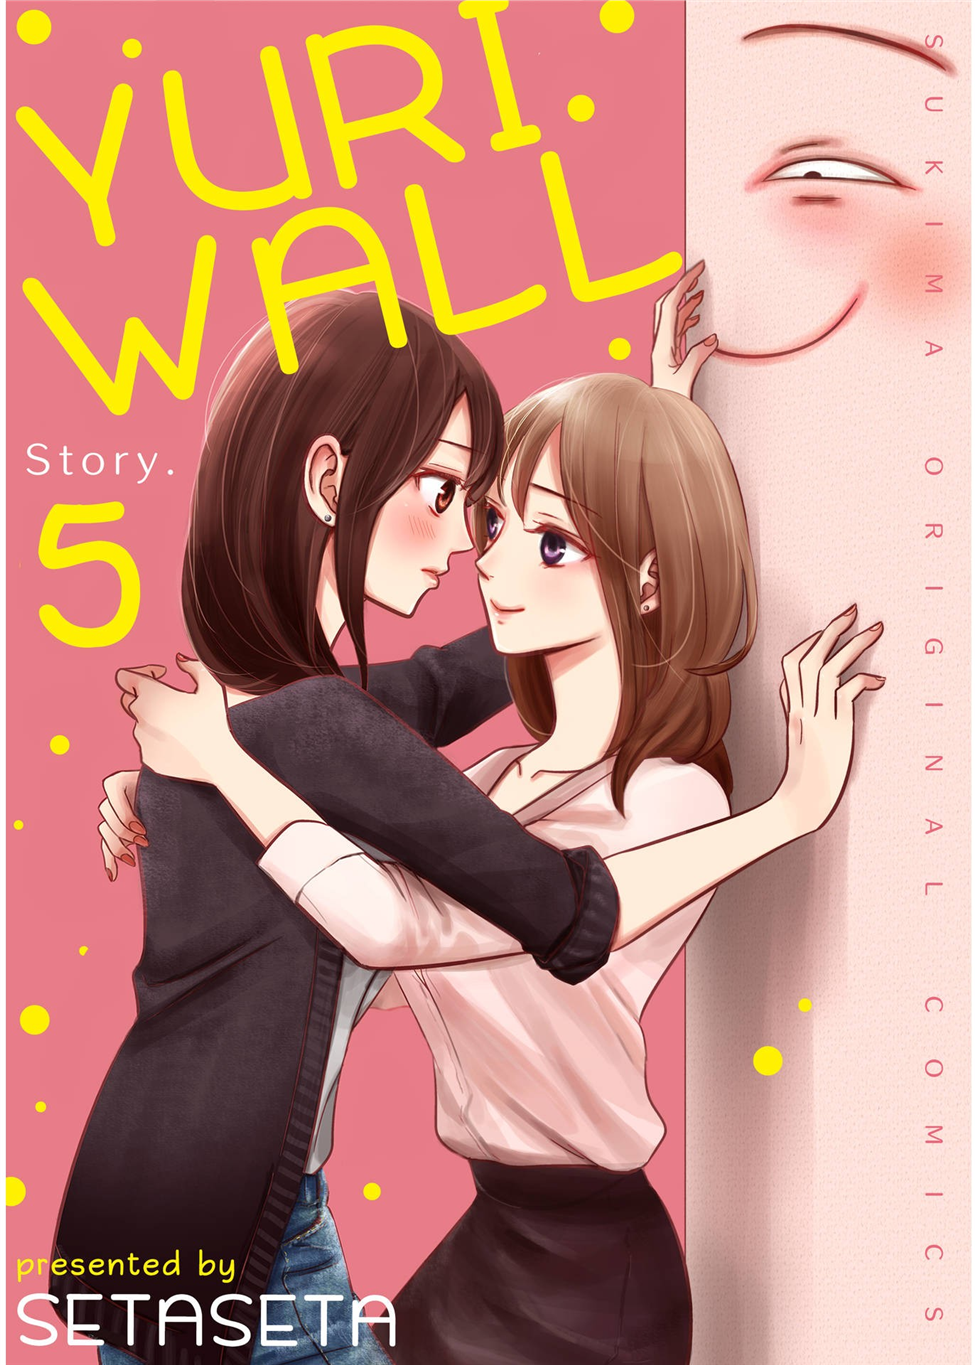 Yuri Wall Story. 5